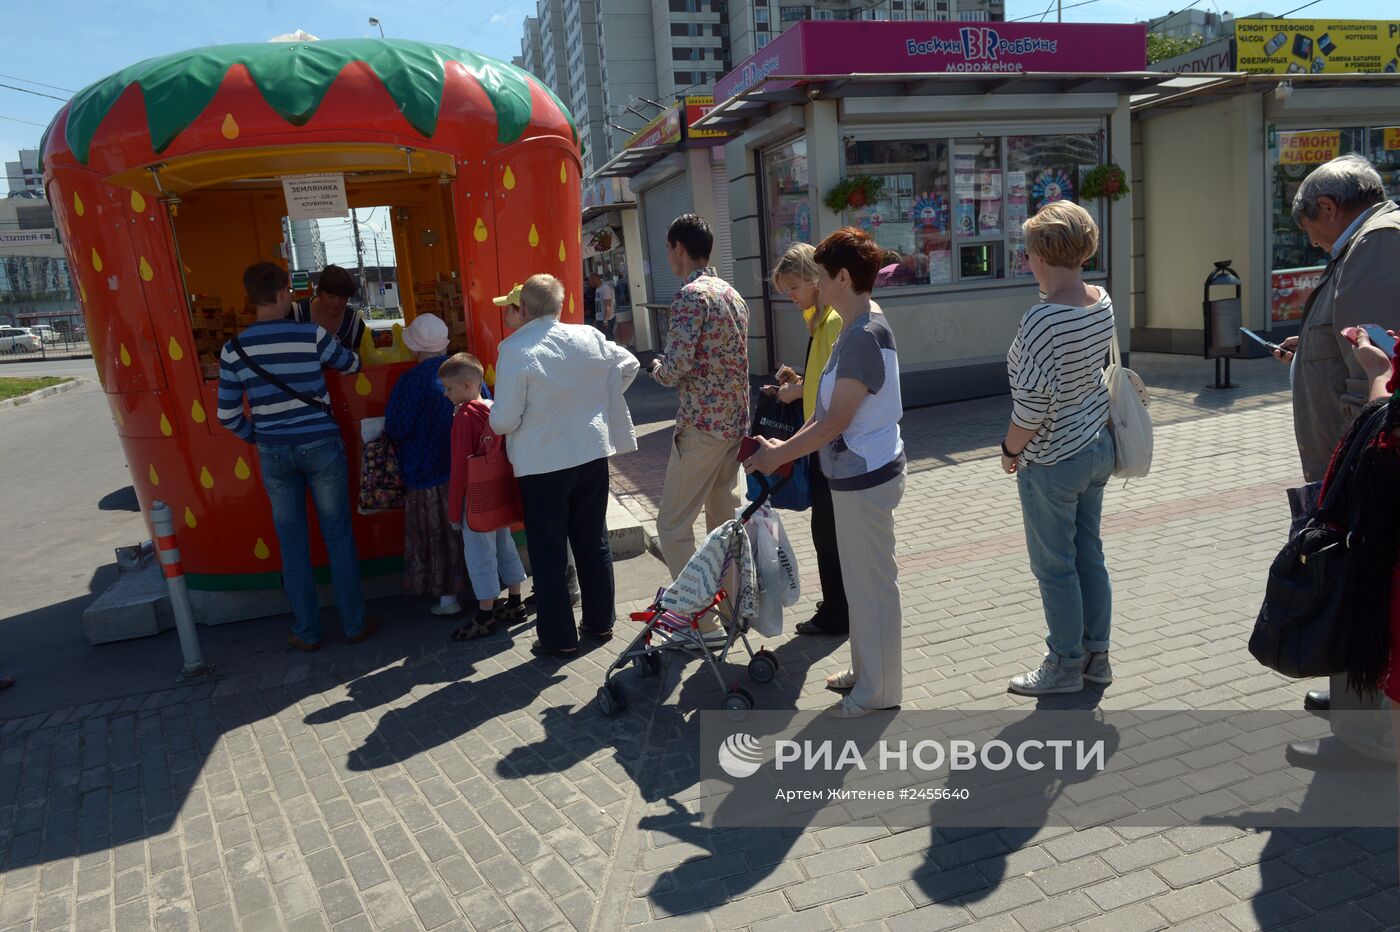 Продажа клубники возле станции метро "Чертановская" в Москве